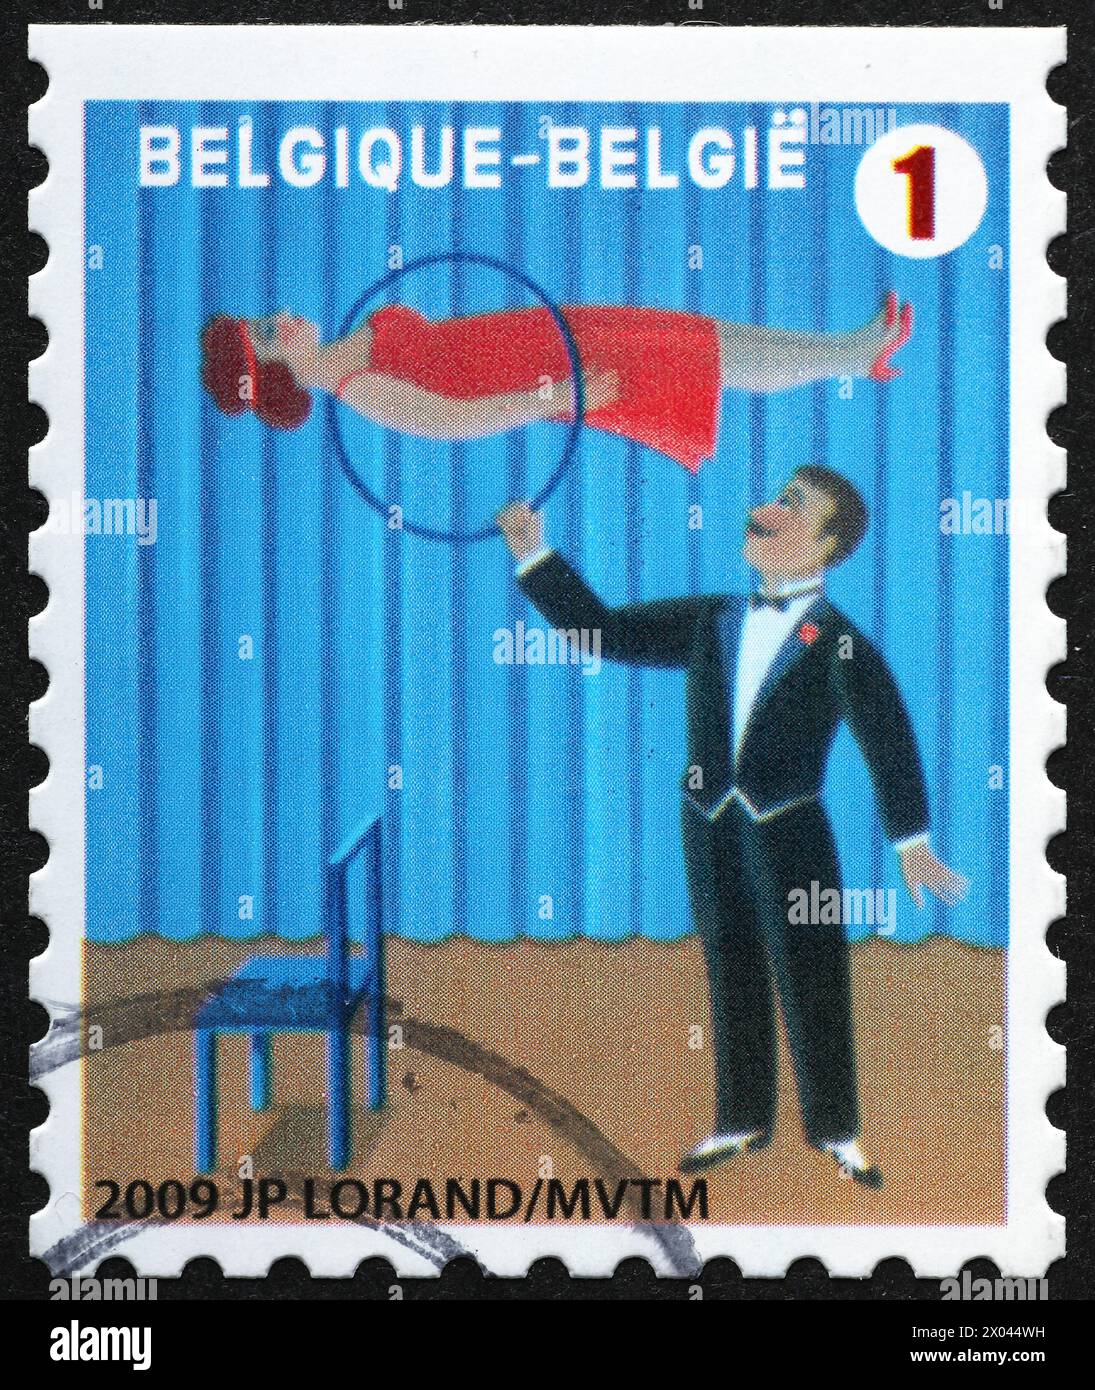 Magicien dans un cirque sur un timbre-poste belge Banque D'Images